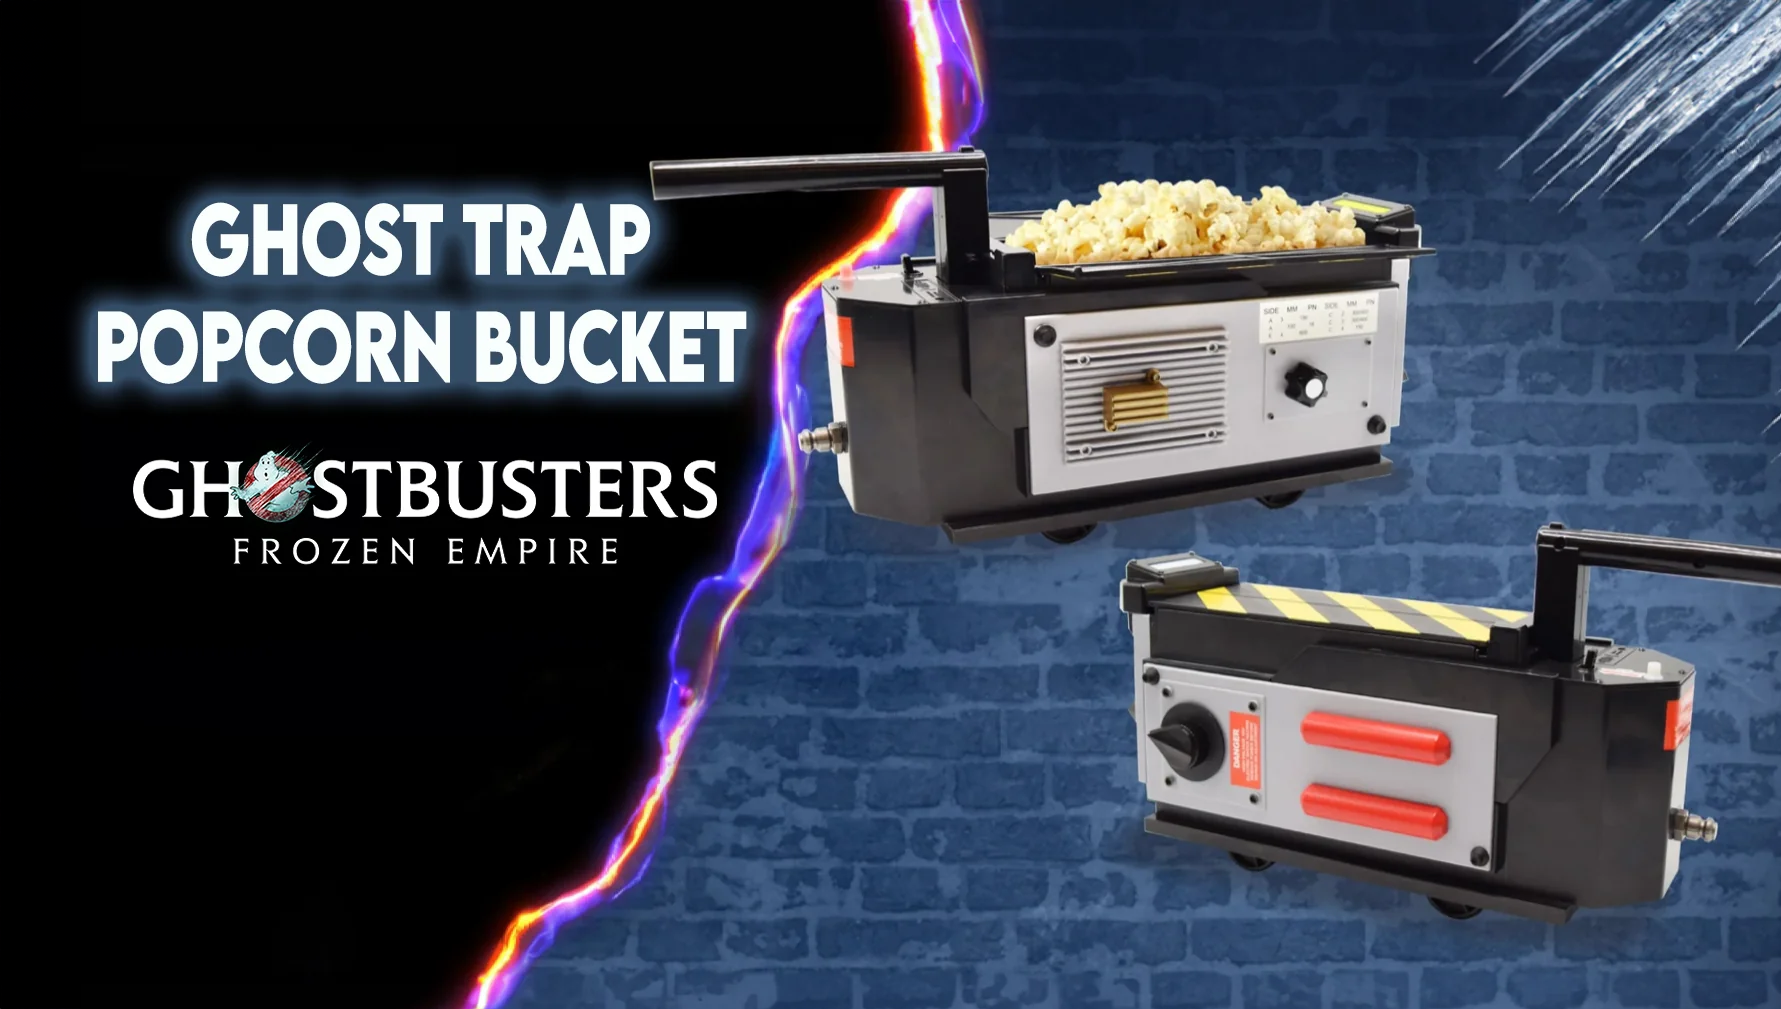 ghostbusters-popcorn-bwced